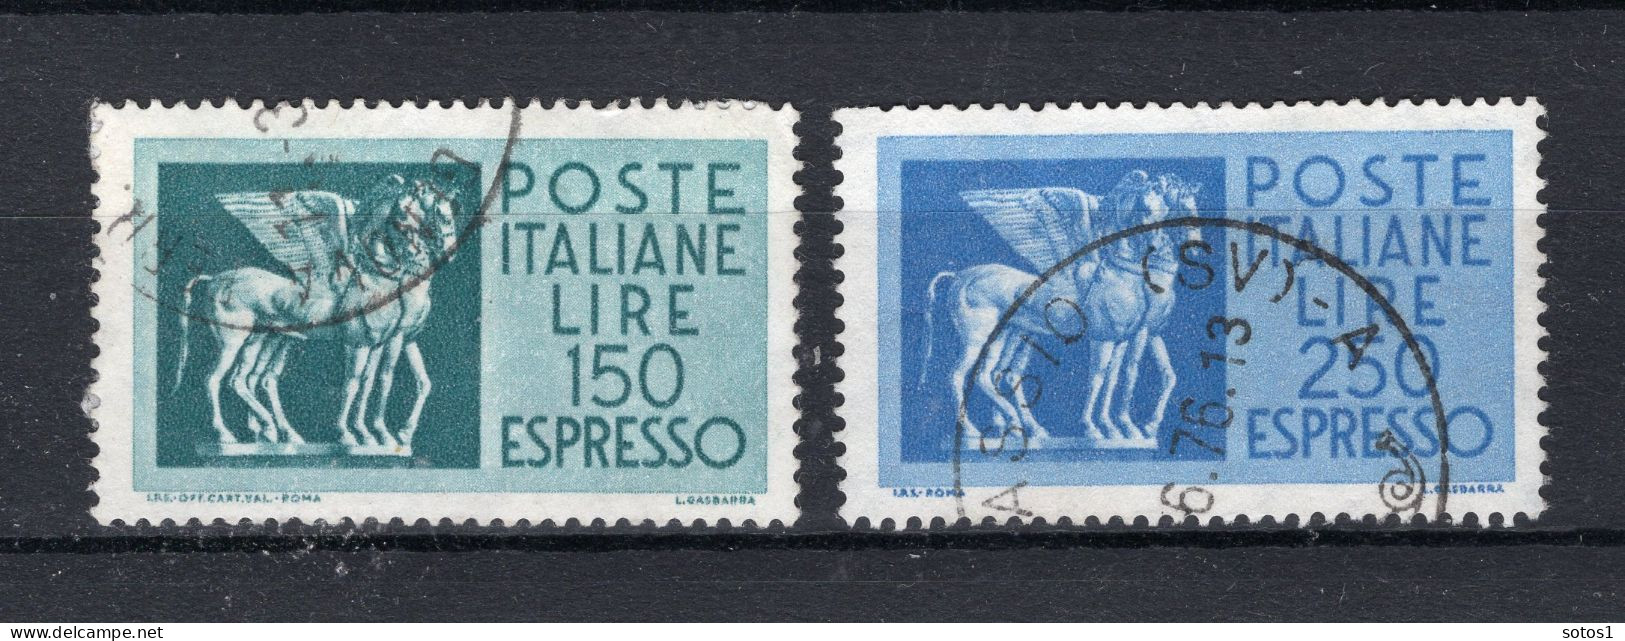 ITALIE Yt. E45/46° Gestempeld Express Zegel 1958-1966 - Express/pneumatic Mail